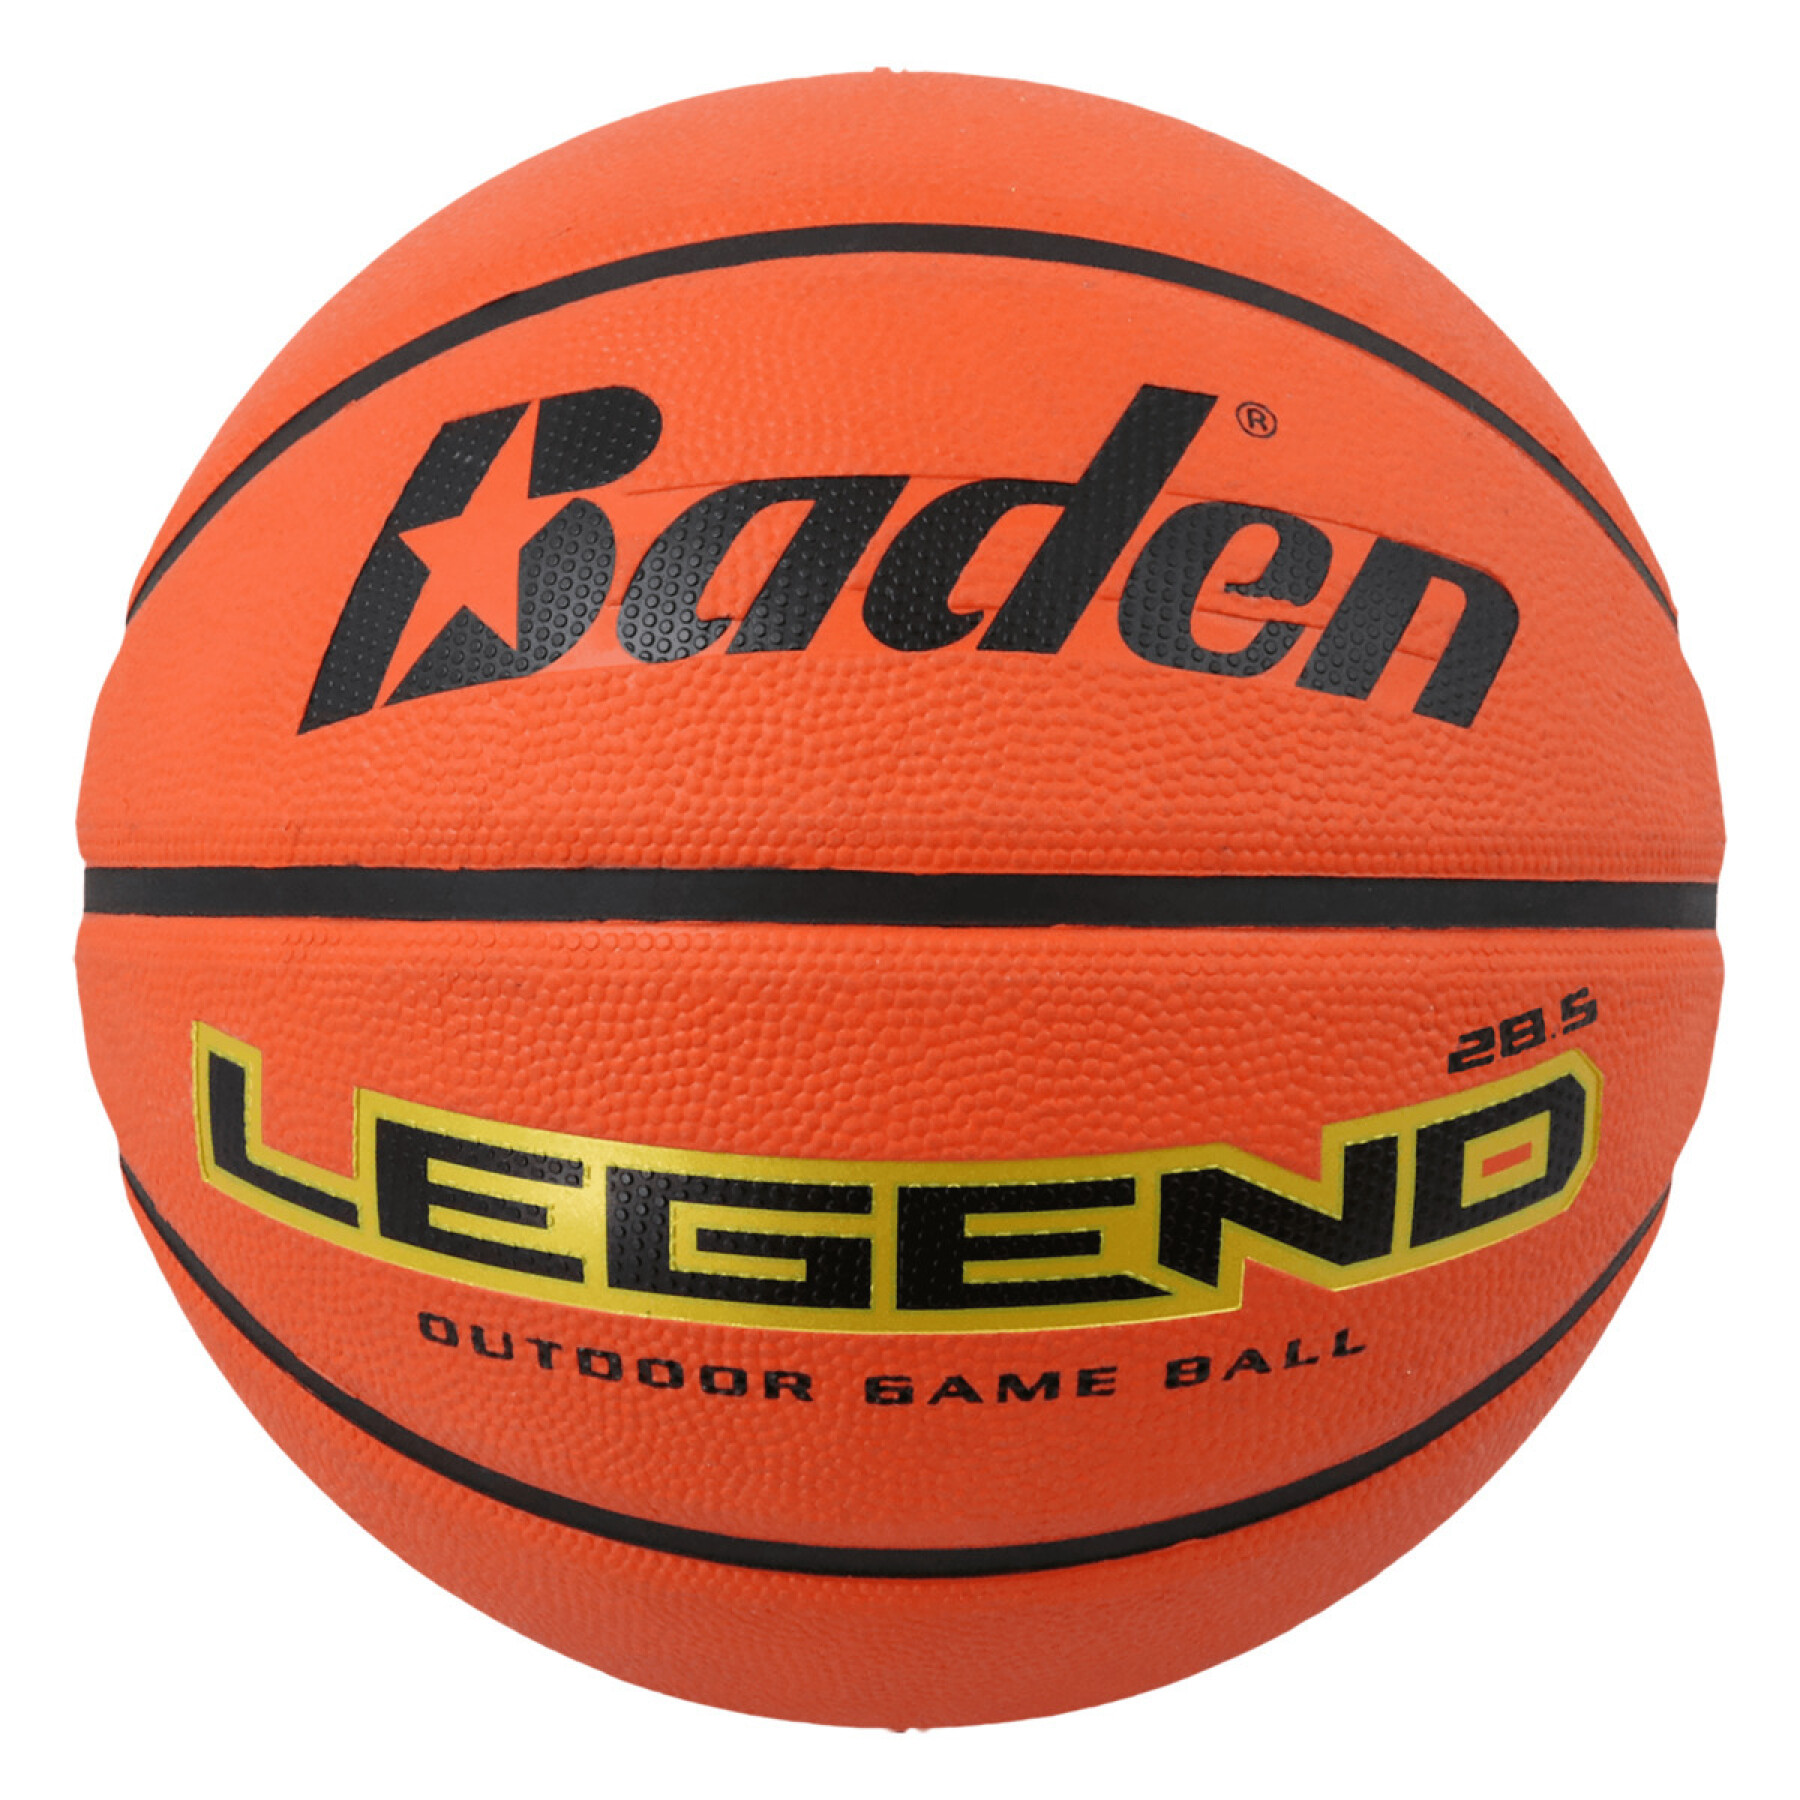 Balão Baden Sports Legend